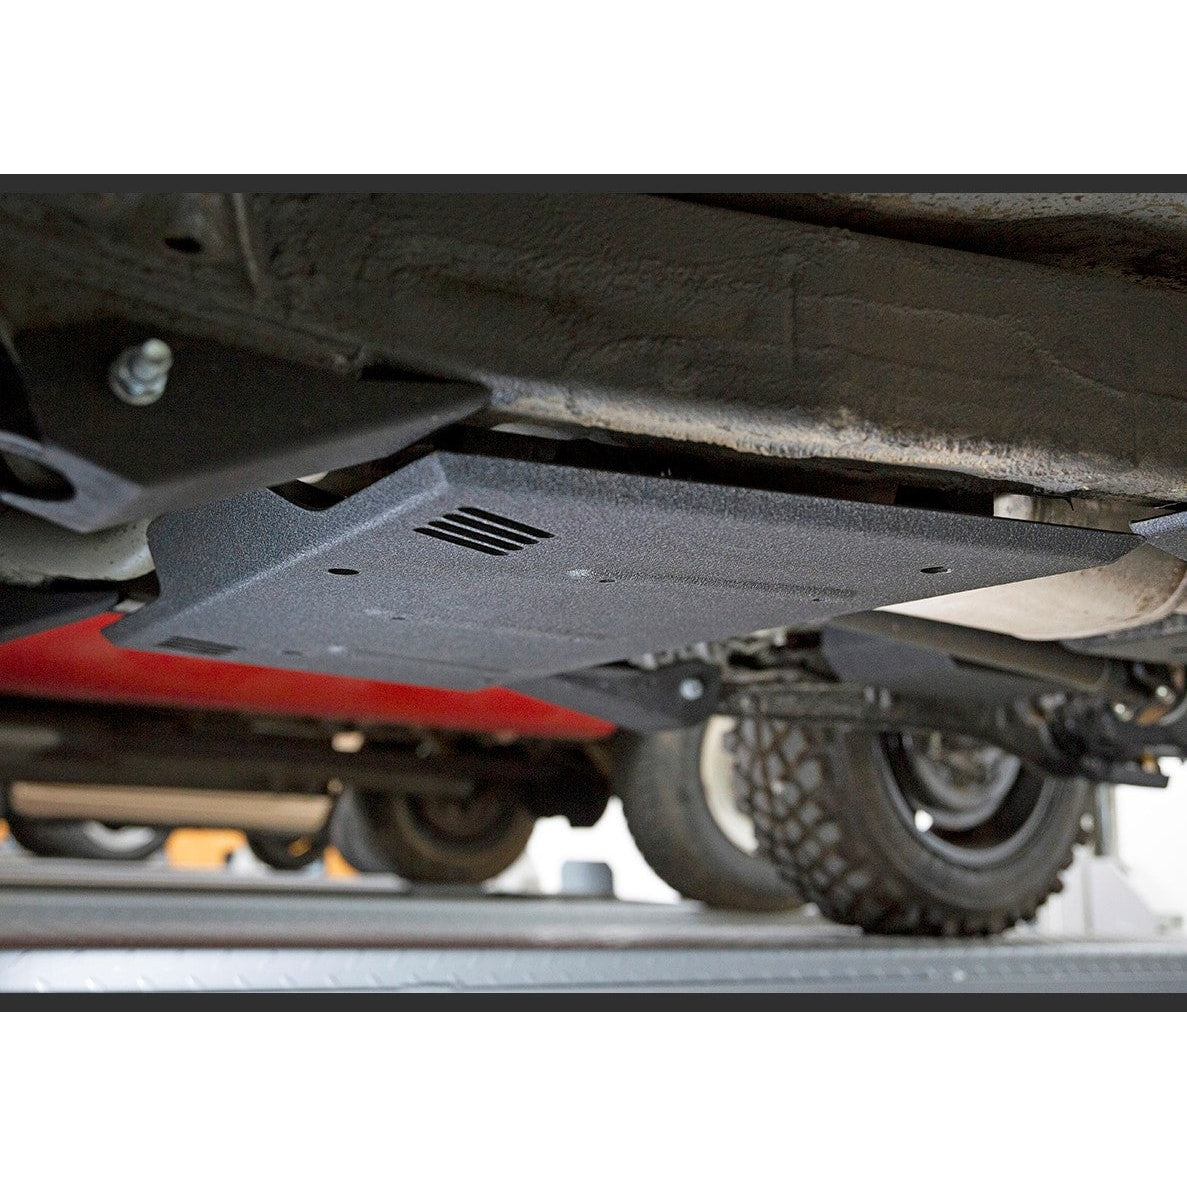 Unterfahrschutz Verteilergetriebe Stahl für Suzuki Jimny II 